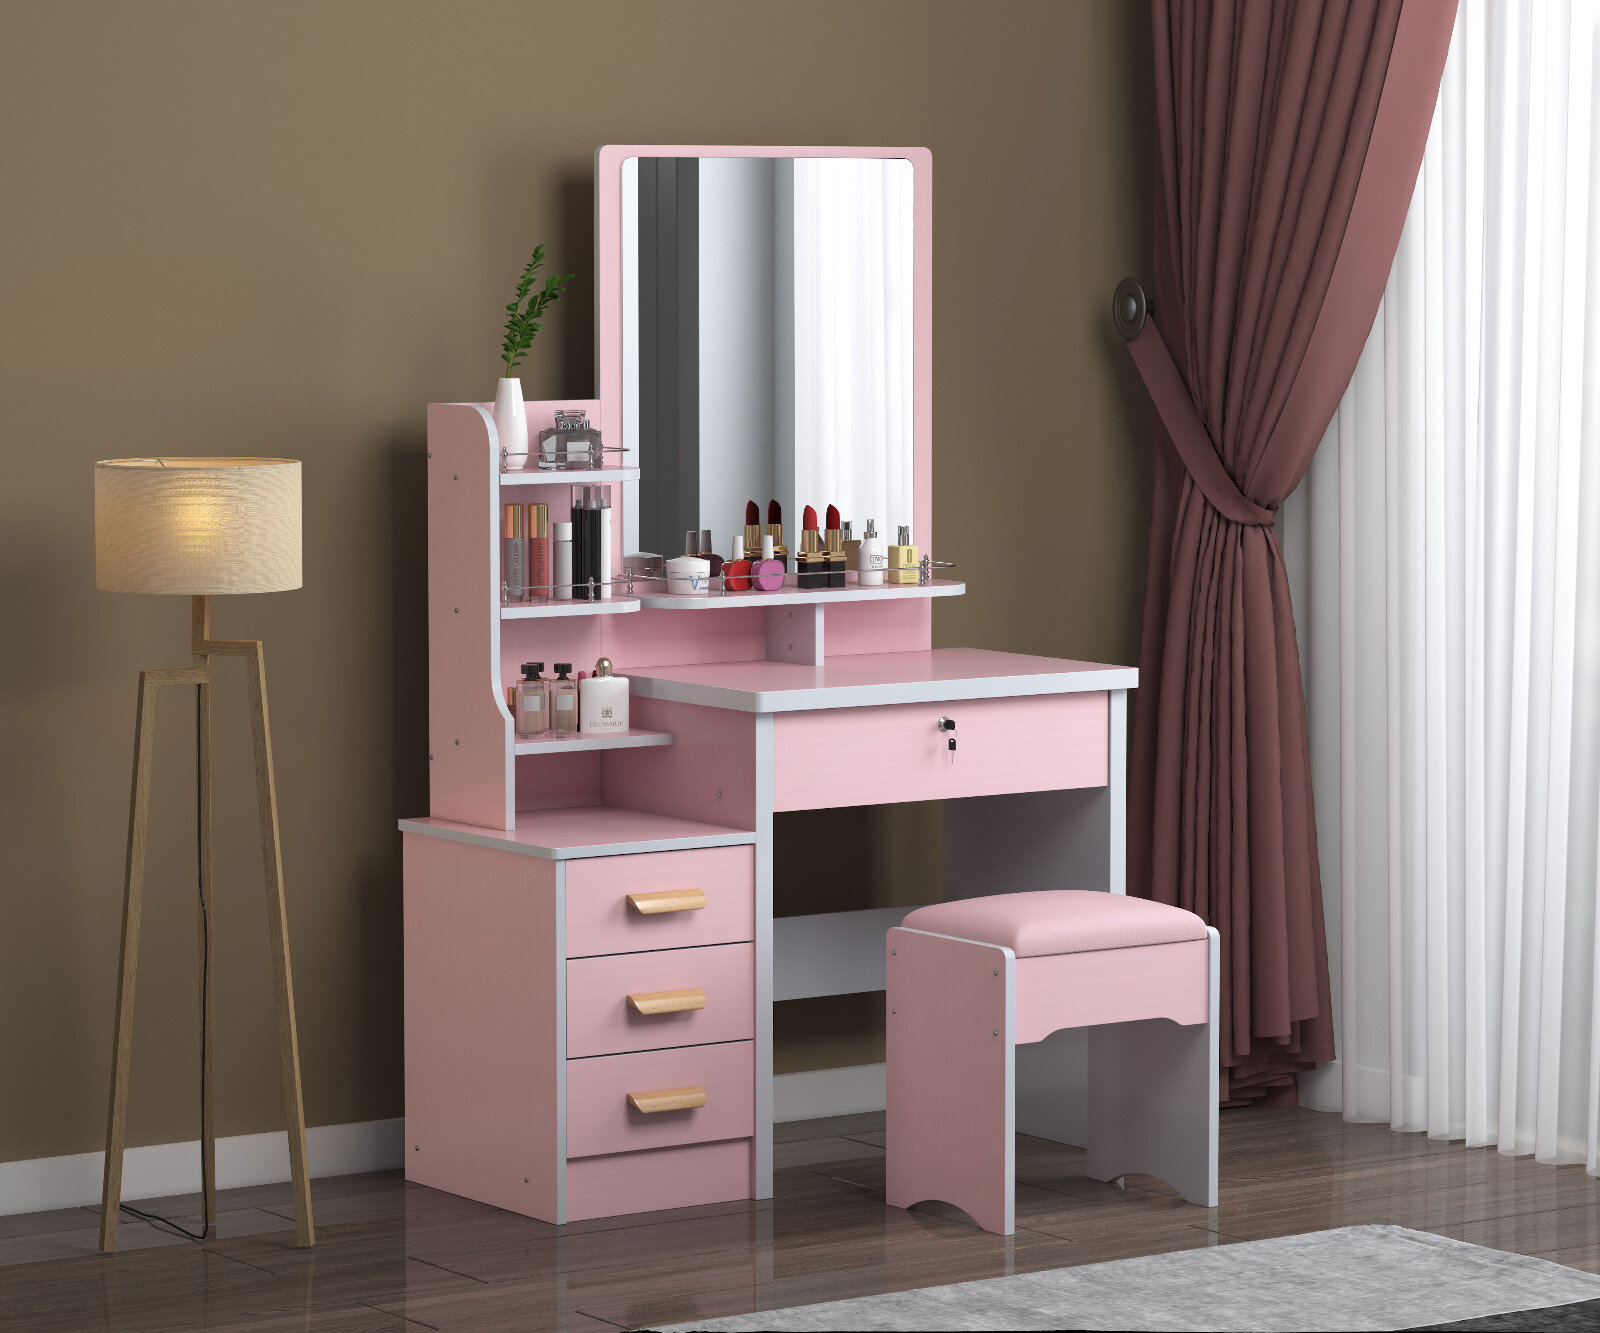 Ebern Designs Modern Dressing Table Stool Bedroom Vanity Set Makeup Desk W Mirror 4 Drawers Wayfair